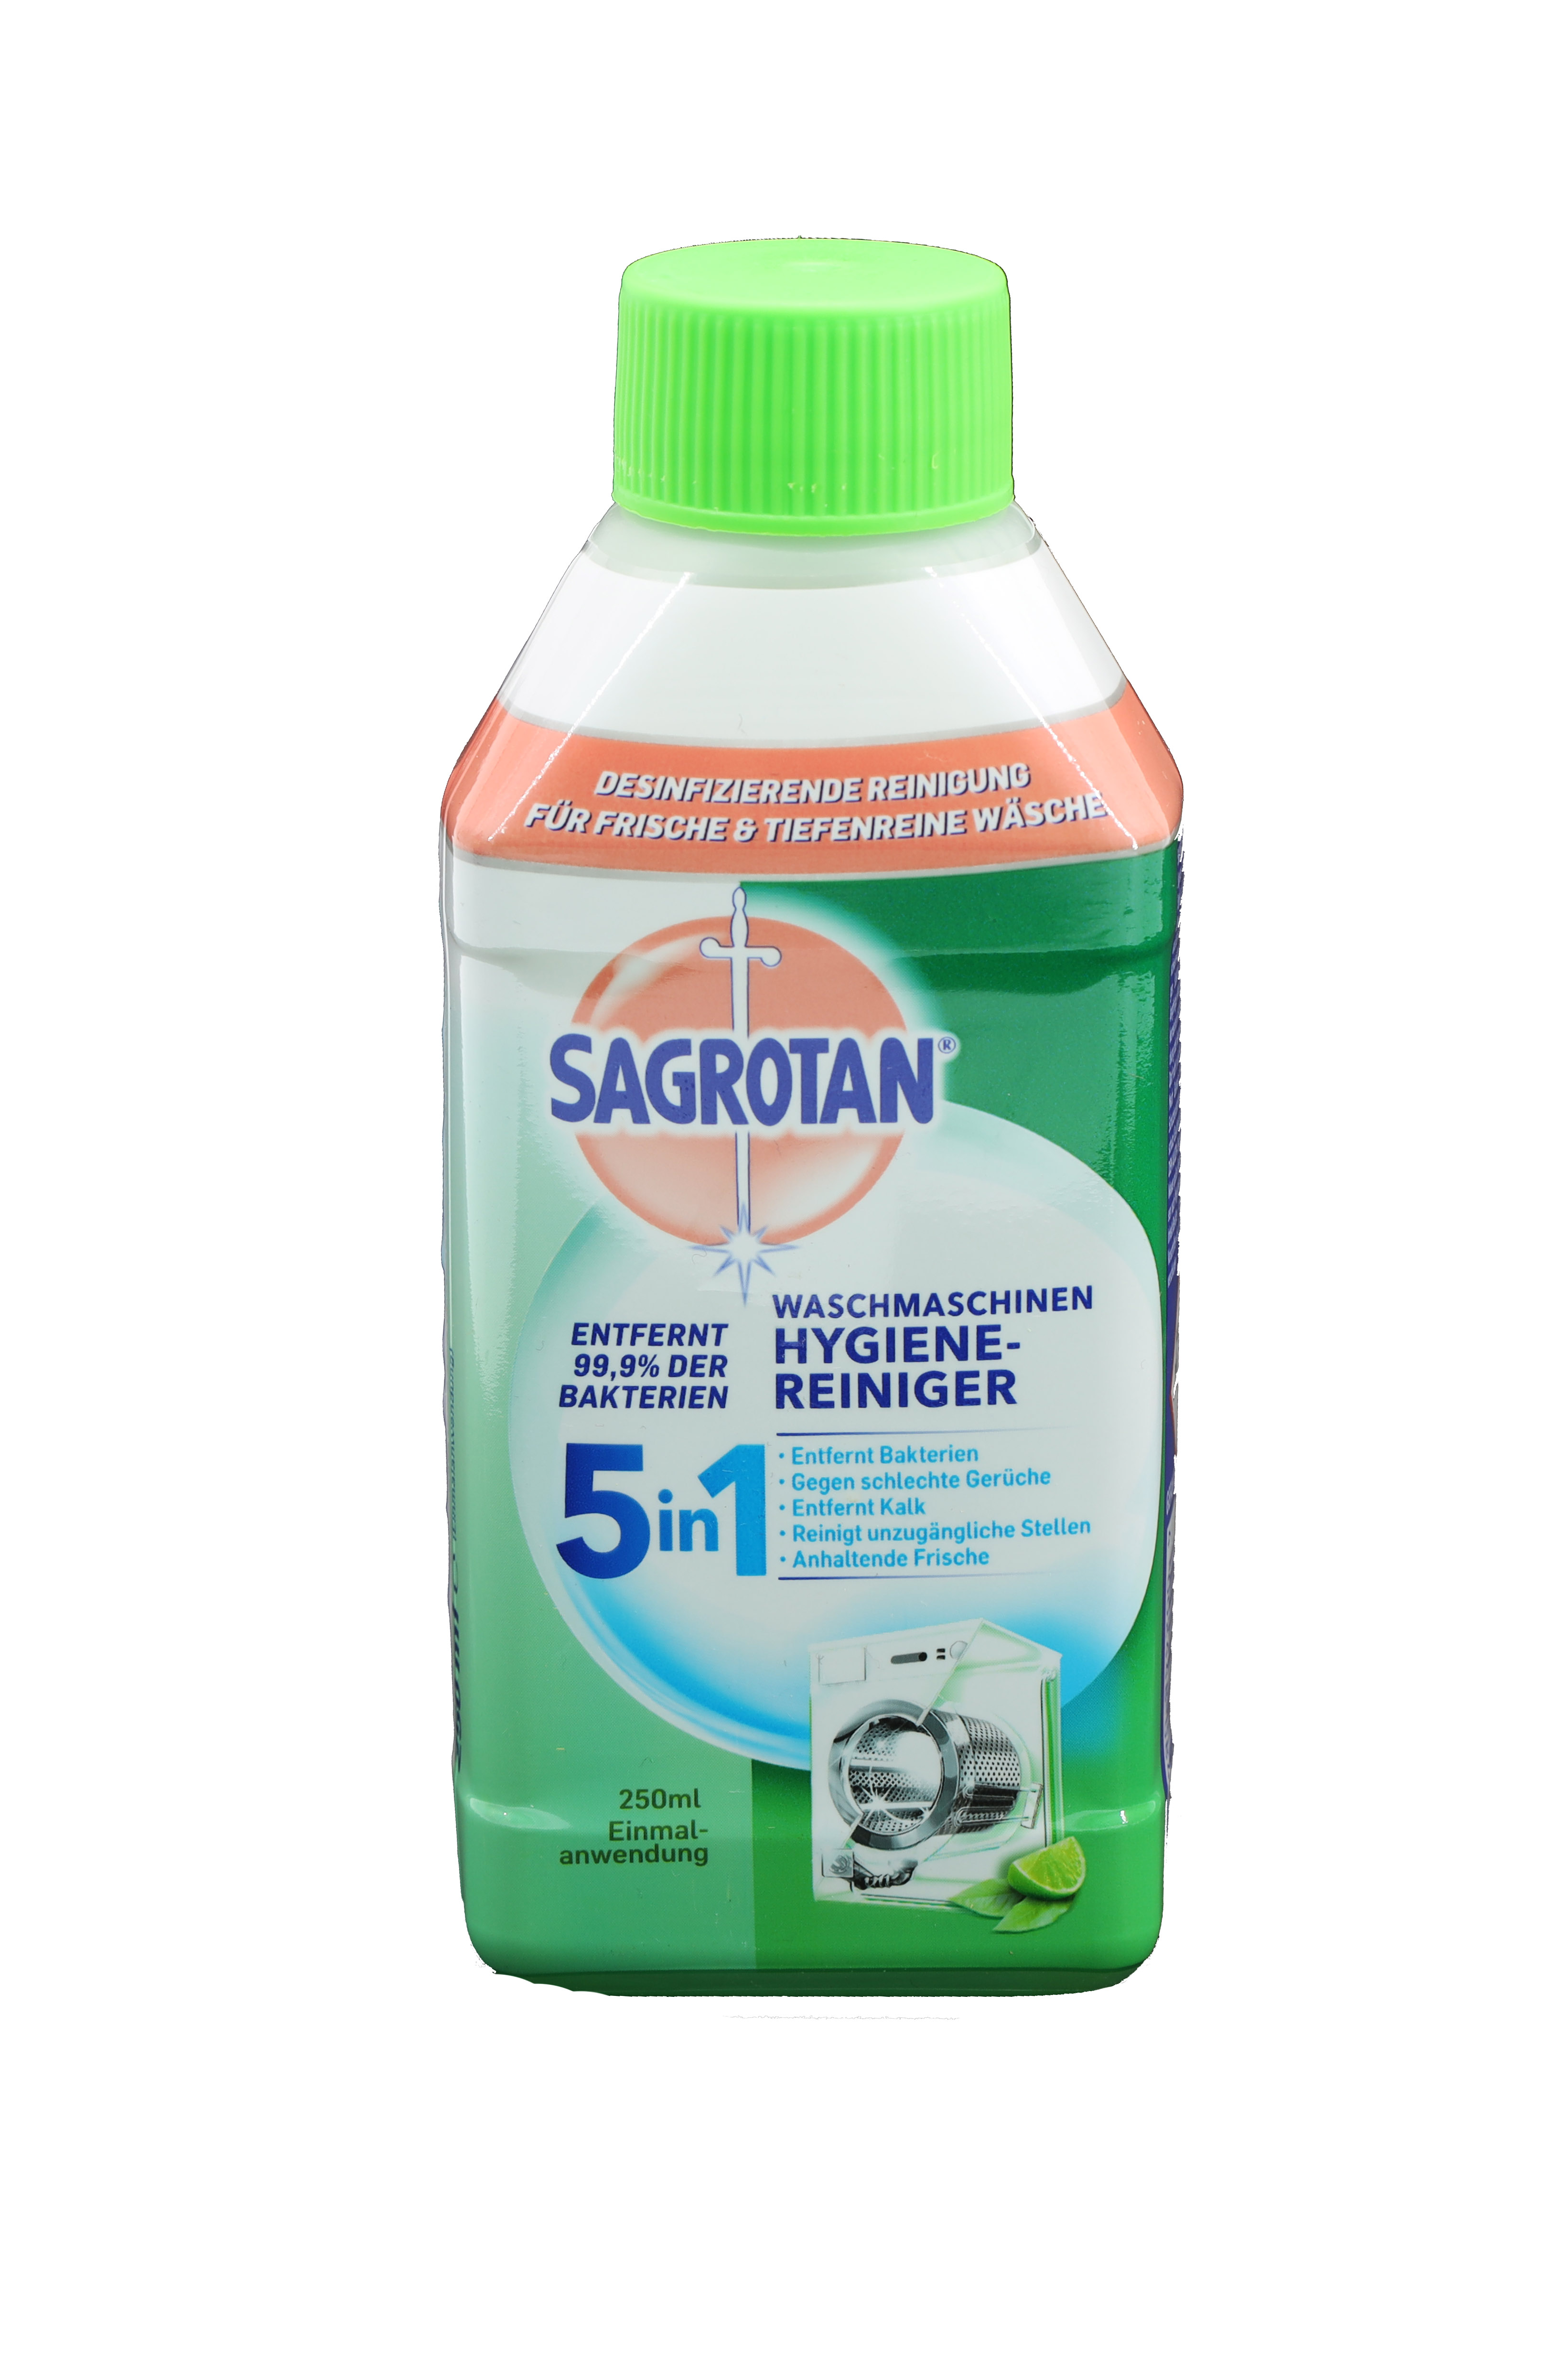 Sagrotan Waschmaschinen Hygiene Reiniger 5in1 250ml